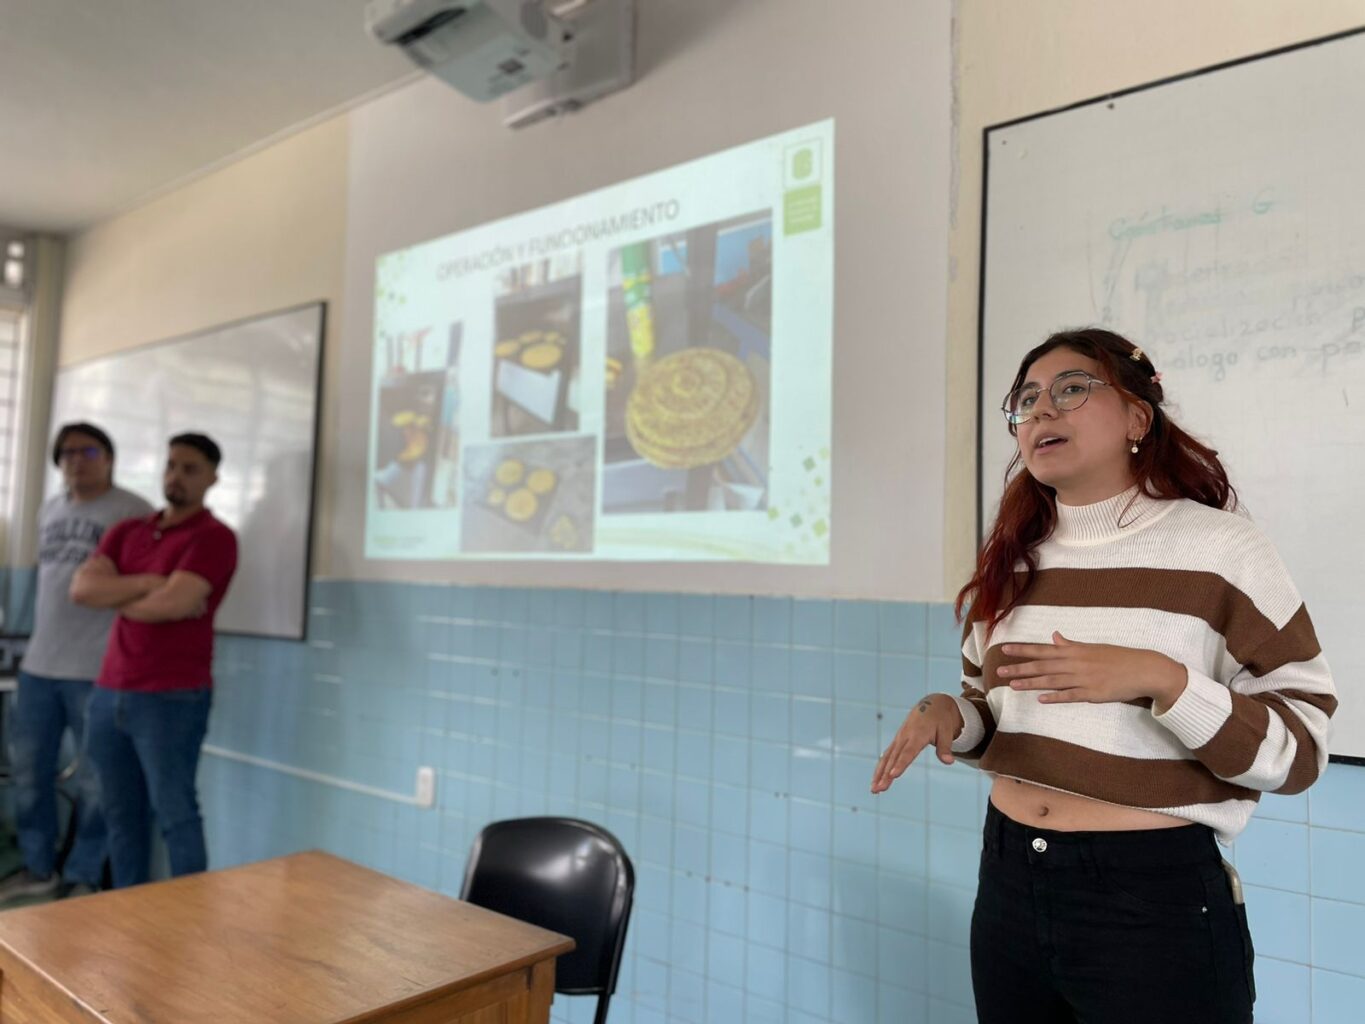 Estudiantes UIS interactuaron con docentes del Colegio La Salle, explicando el proyecto académico.